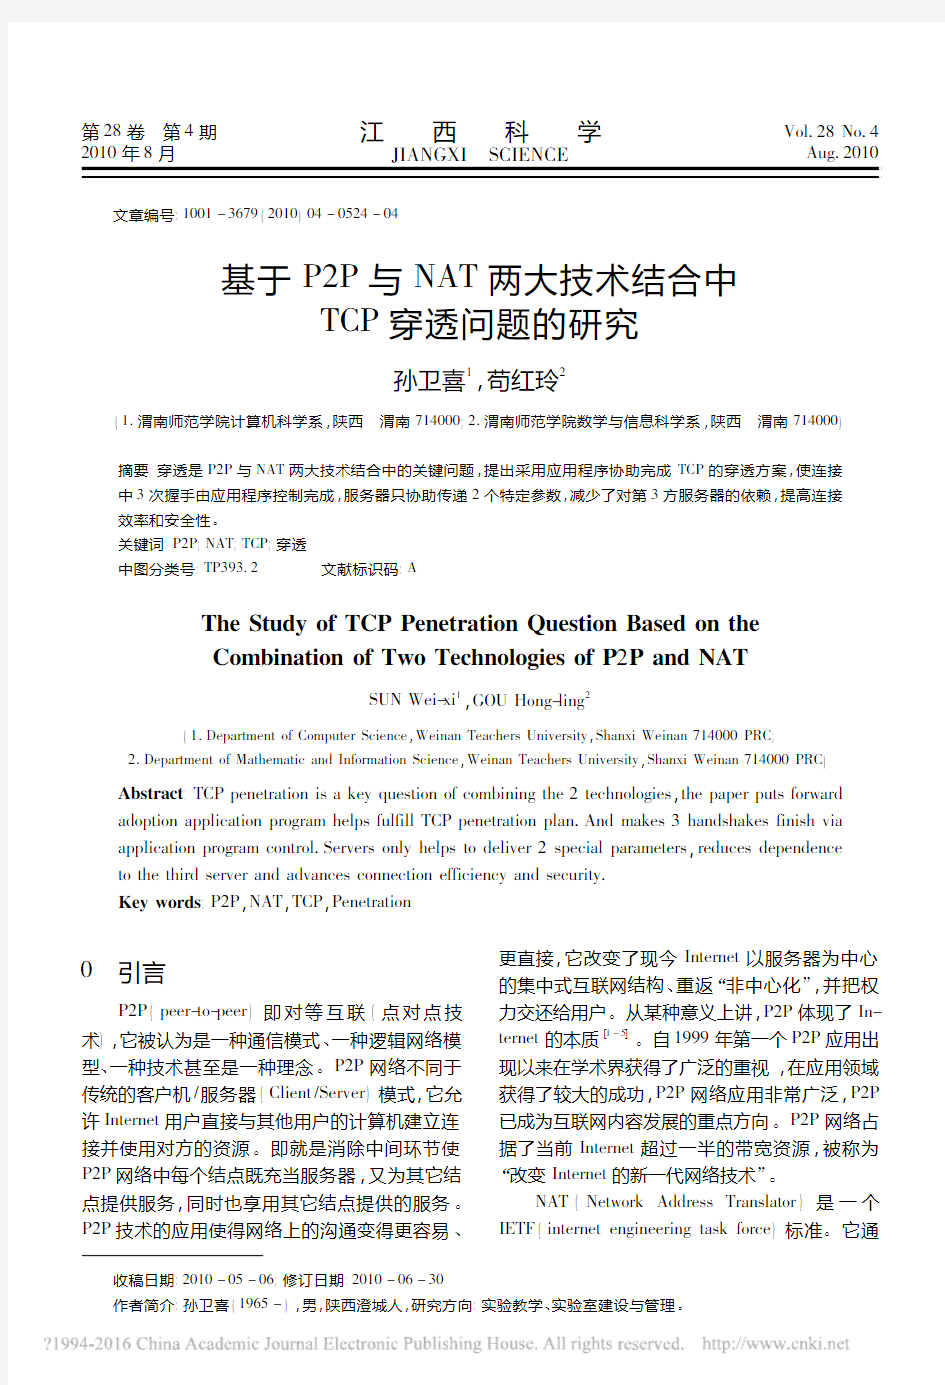 基于P2P与NAT两大技术结合中TCP穿透问题的研究